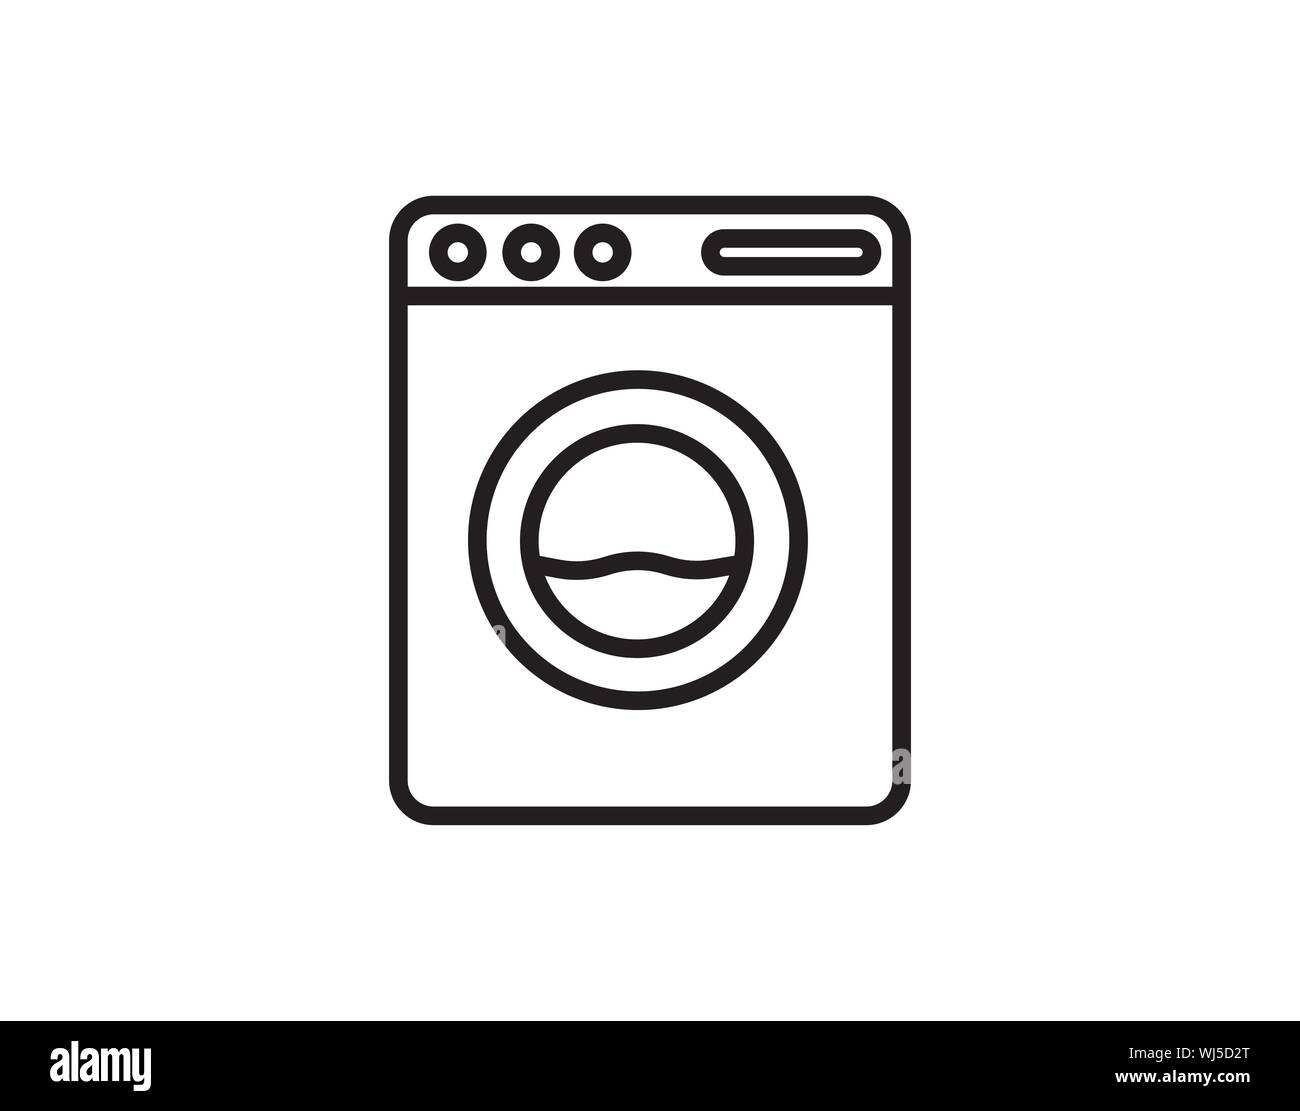 Washing machine logo Banque de photographies et d'images à haute résolution  - Alamy